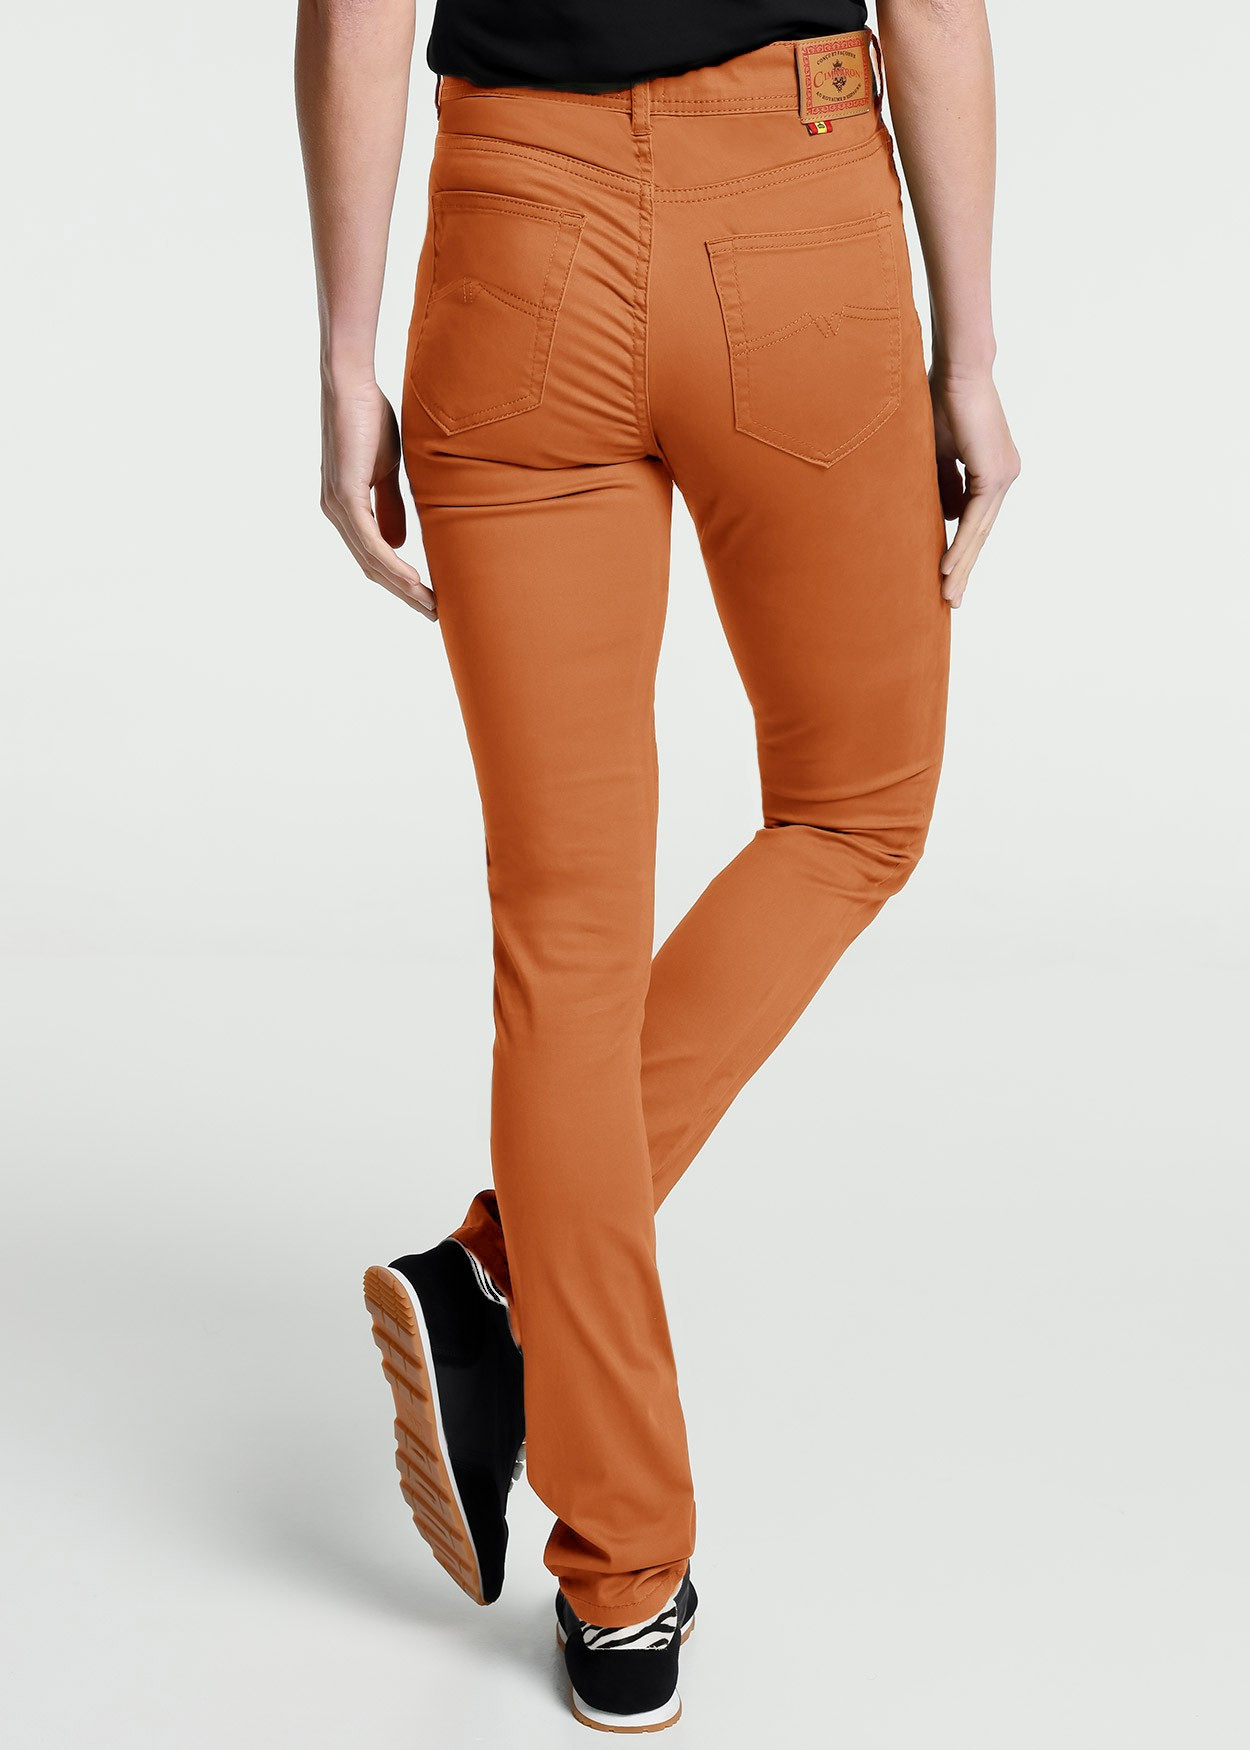 Pantalon de couleur ajusté avec des jambes longues | Taille en pouces Cimarron